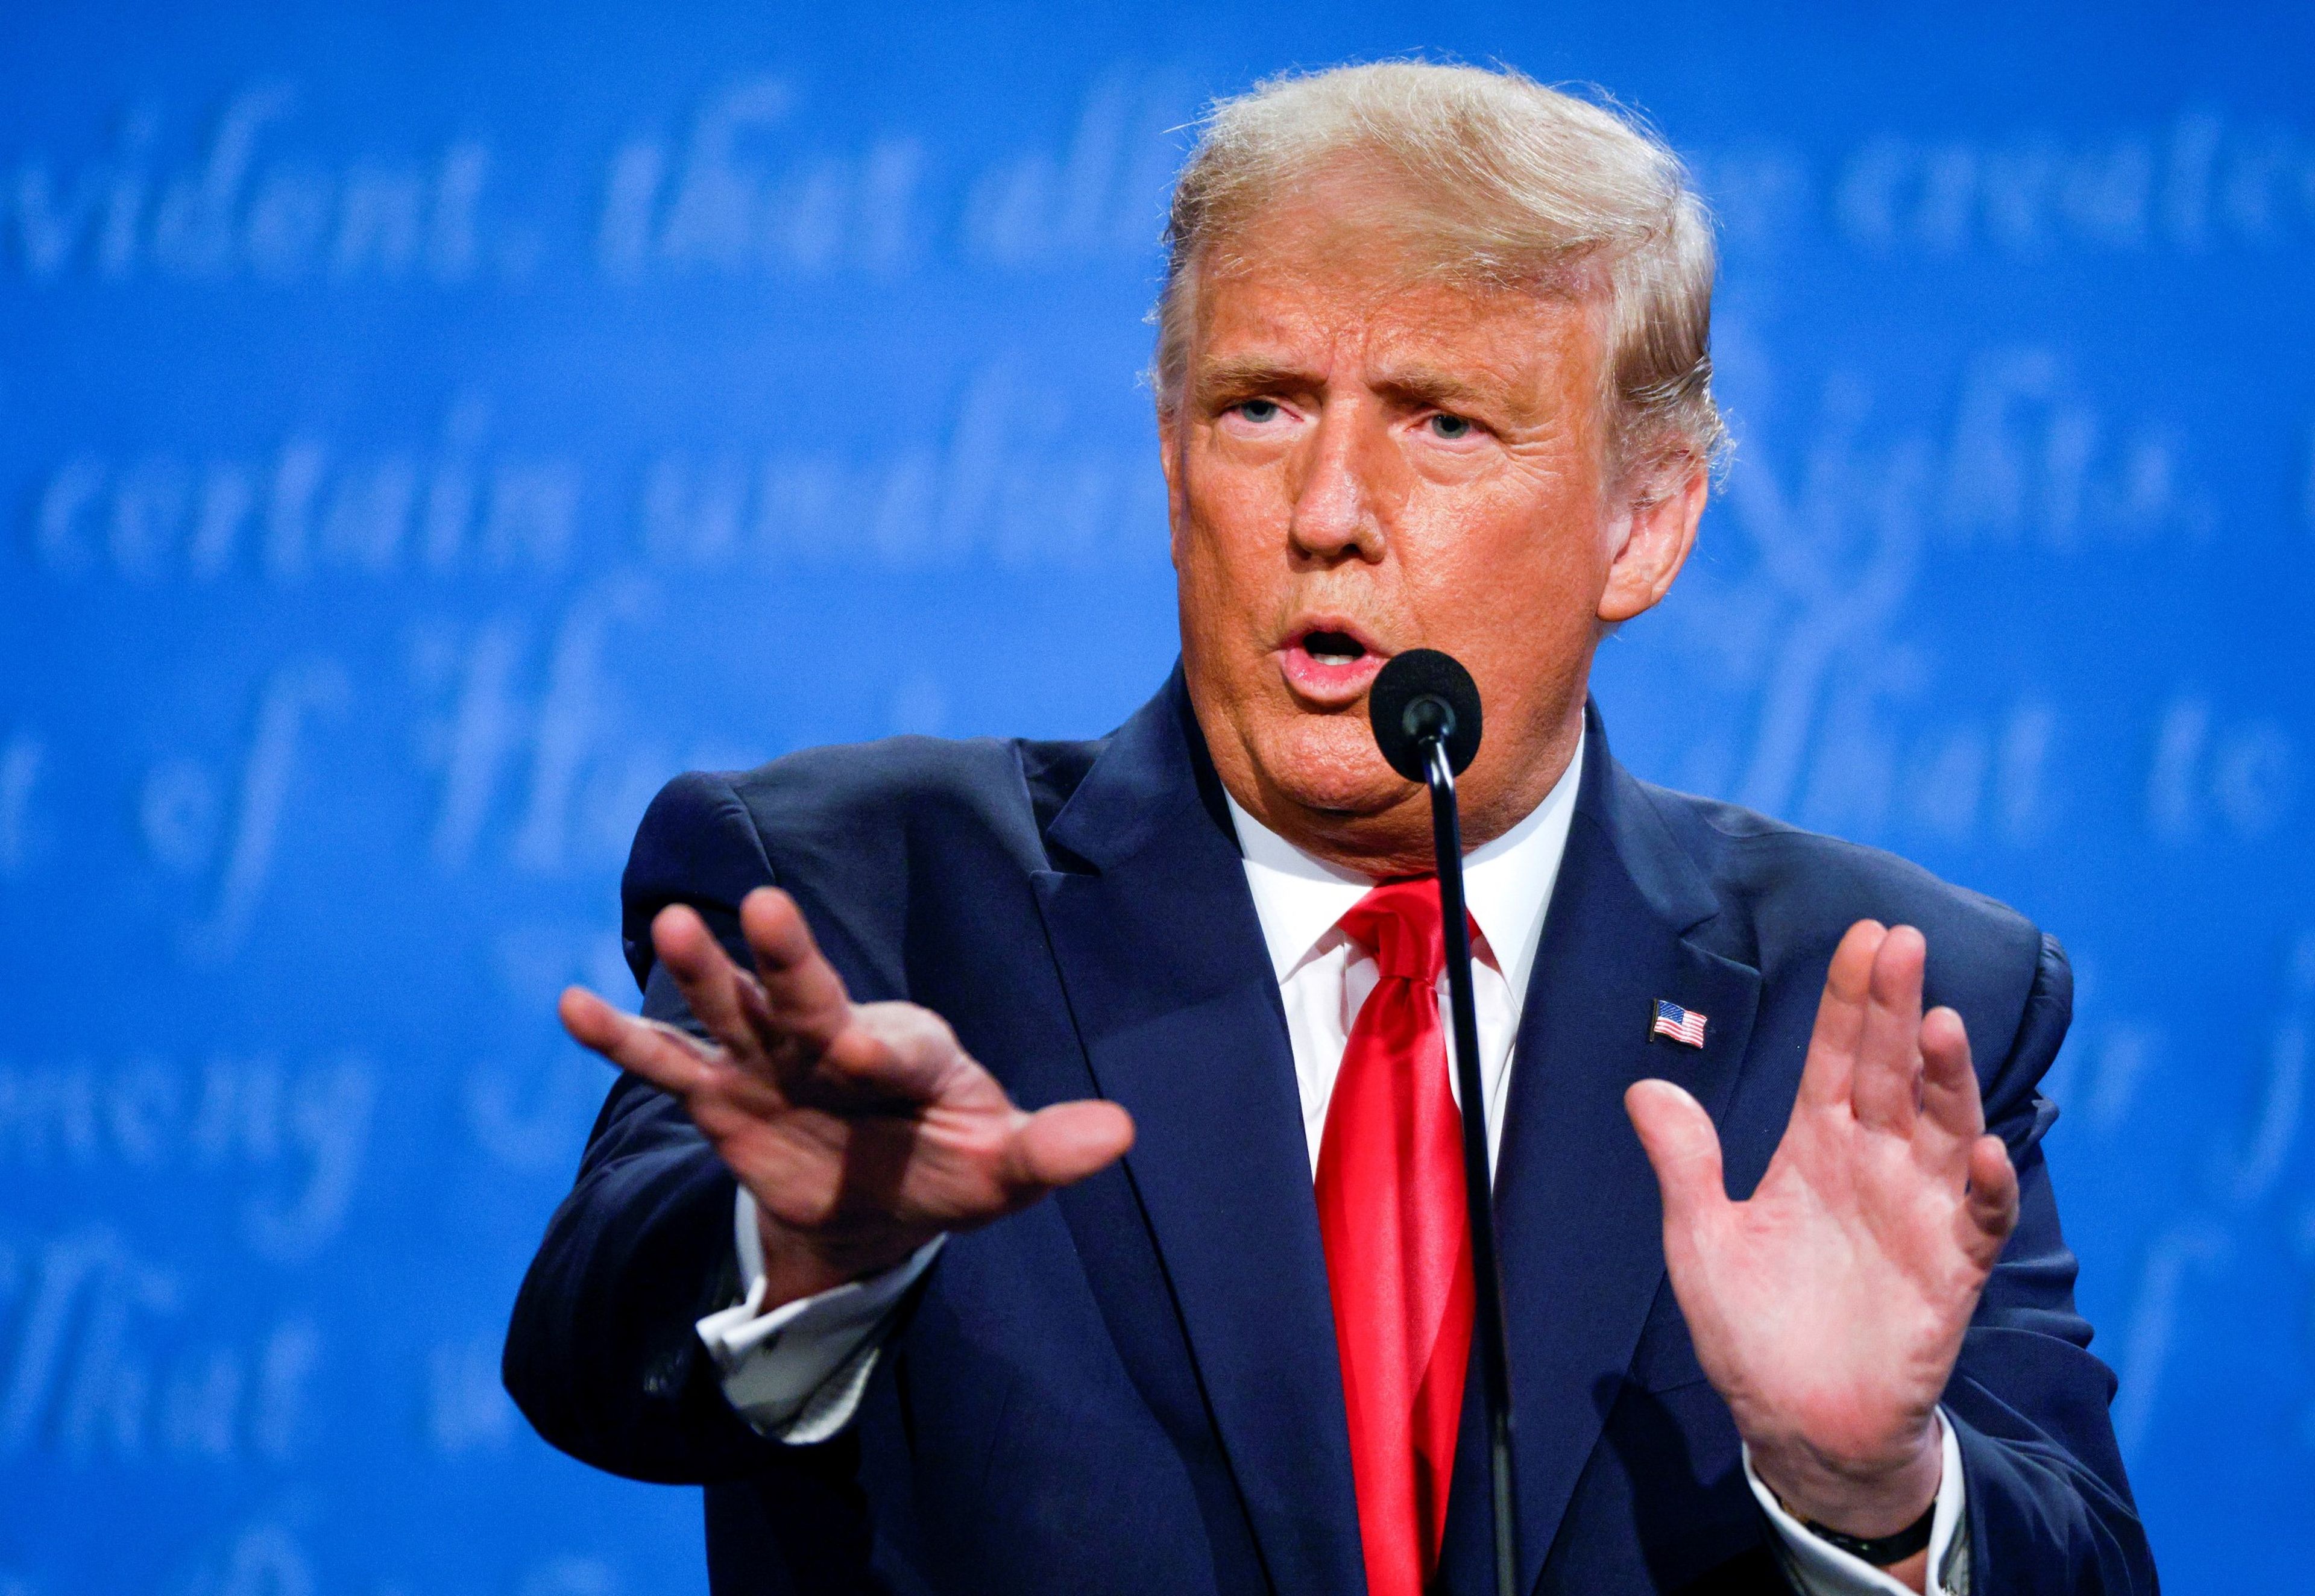 Donald Trump, presidente de Estados Unidos, durante el último debate contra Joe Biden antes de las elecciones presidenciales de noviembre.